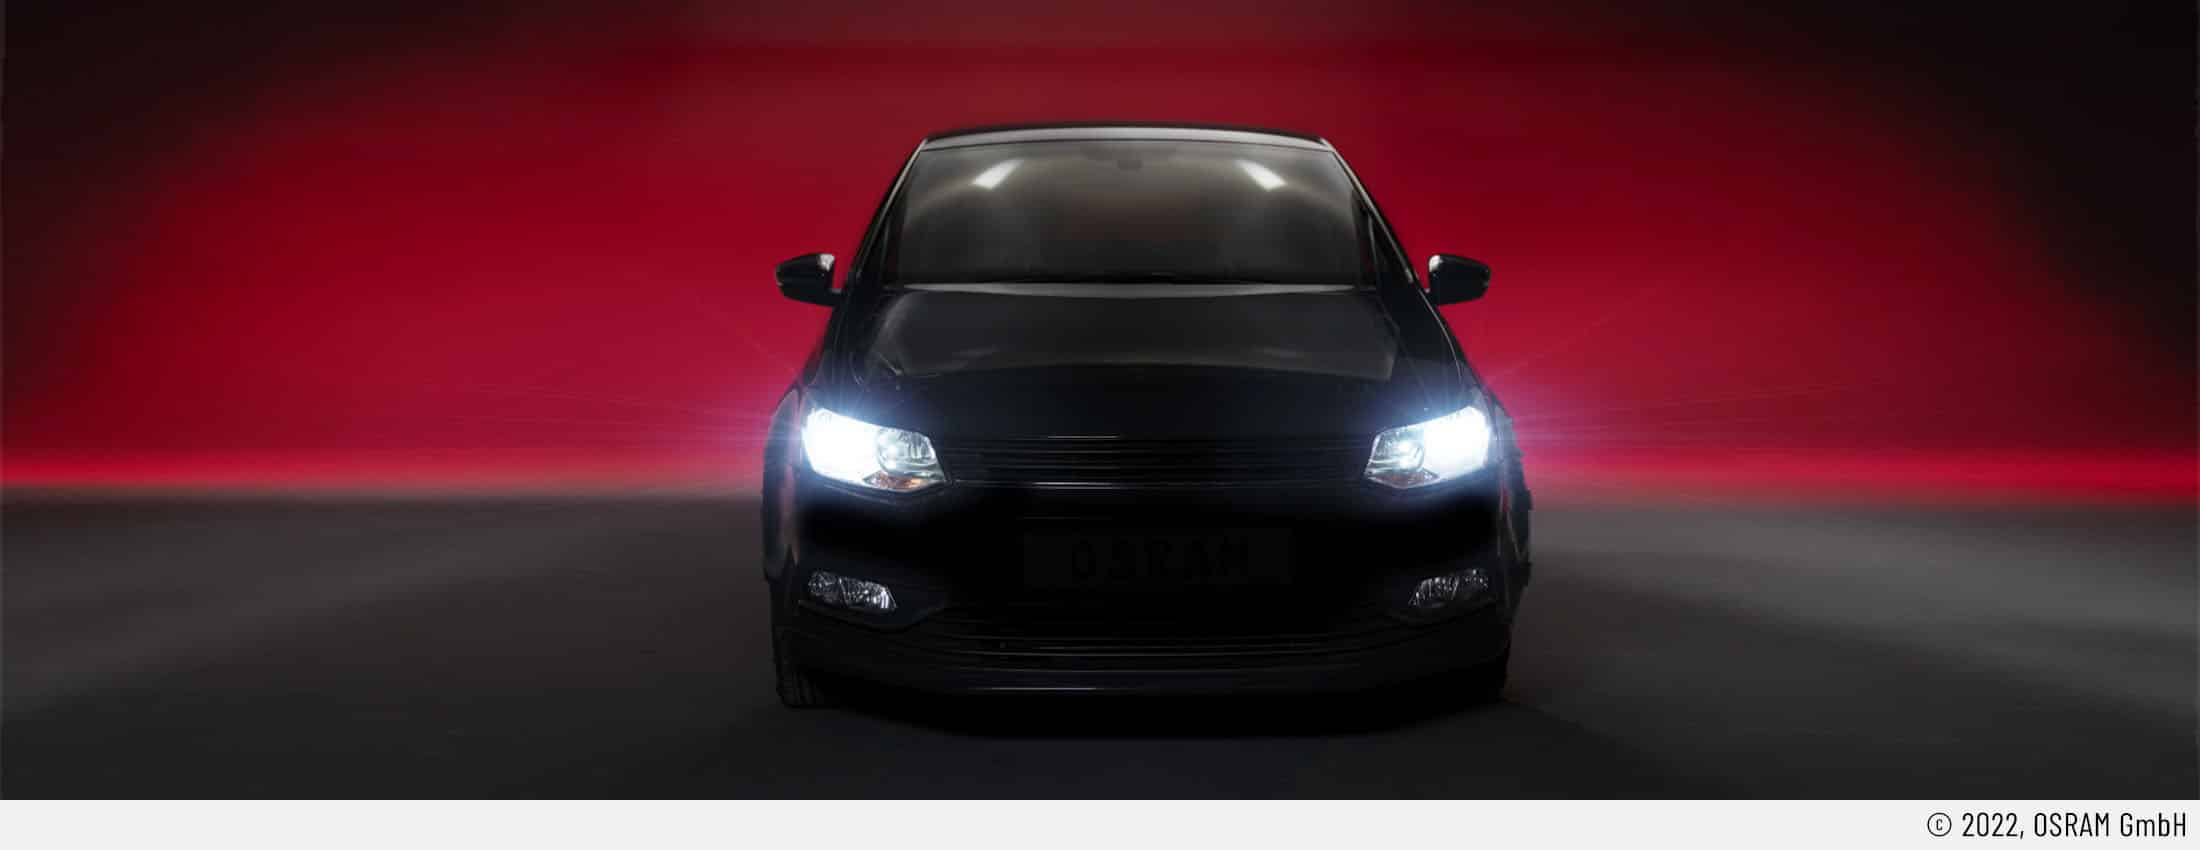 Auf dem Headerbild ist ein Auto mit eingeschalteten Frontscheinwerfer von vorne zu sehen. Es ist eindeutig mit Retrofit-LEDs ausgerüstet. Der Untergrund ist dunkelgrau. Der Hintergrund ist rötlich. Somit kommt das Scheinwerferlicht besonders zur Geltung.